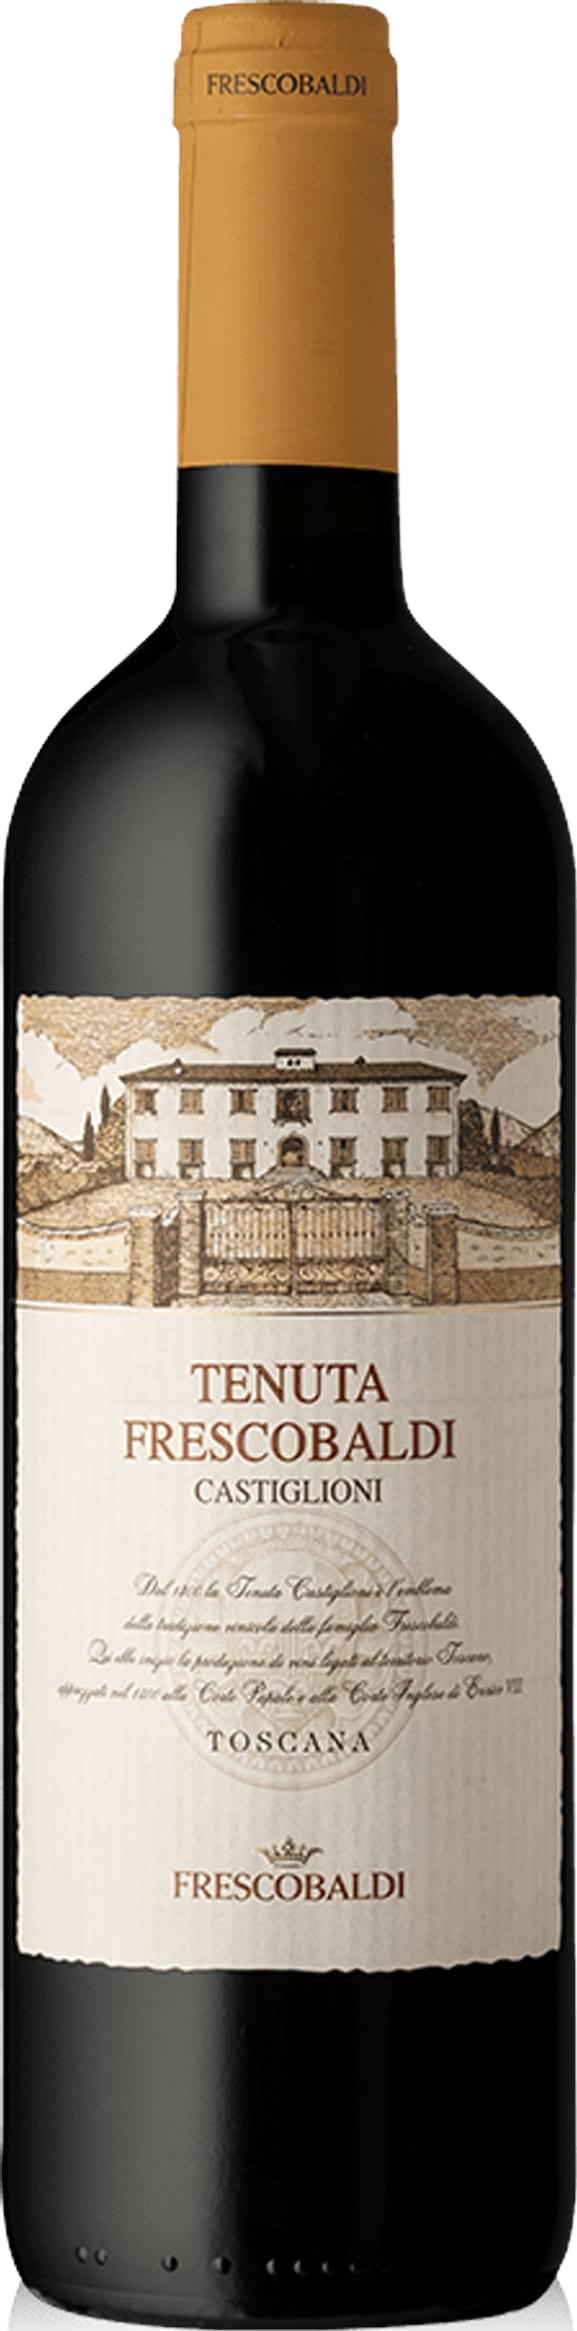 Frescobaldi Tenuta di Castiglioni, 150cl 2018 150cl - Buy Frescobaldi Wines from GREAT WINES DIRECT wine shop